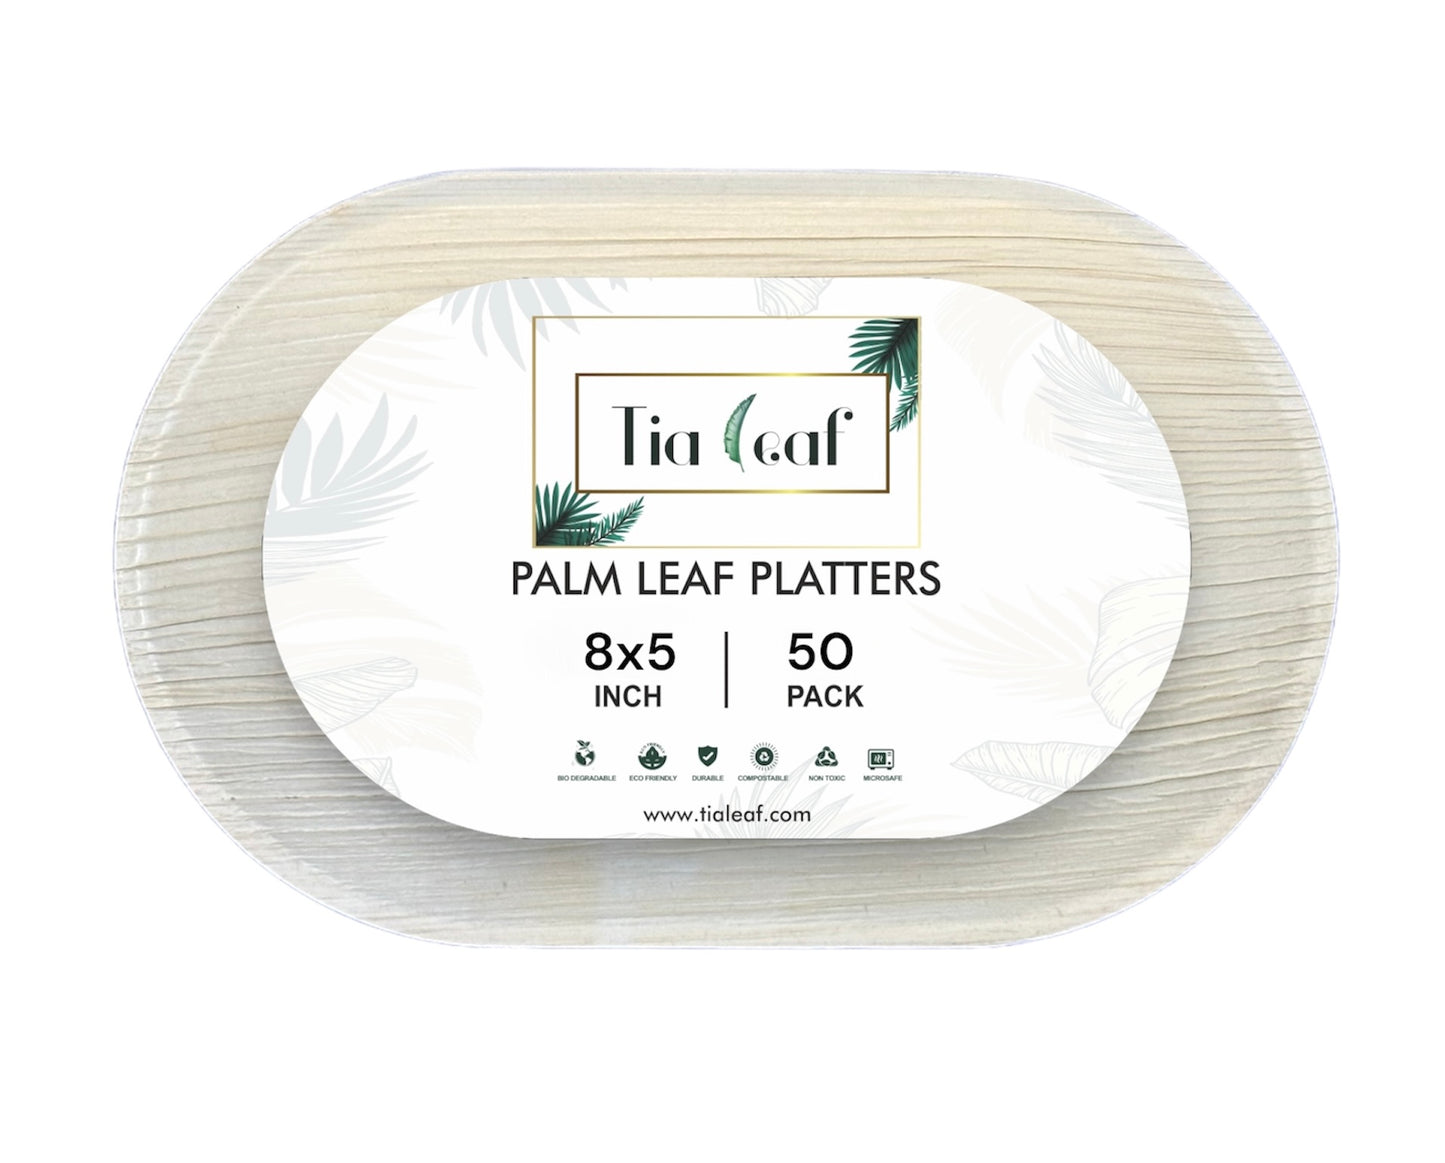 8" x 5" Oval Palm Leaf Plates